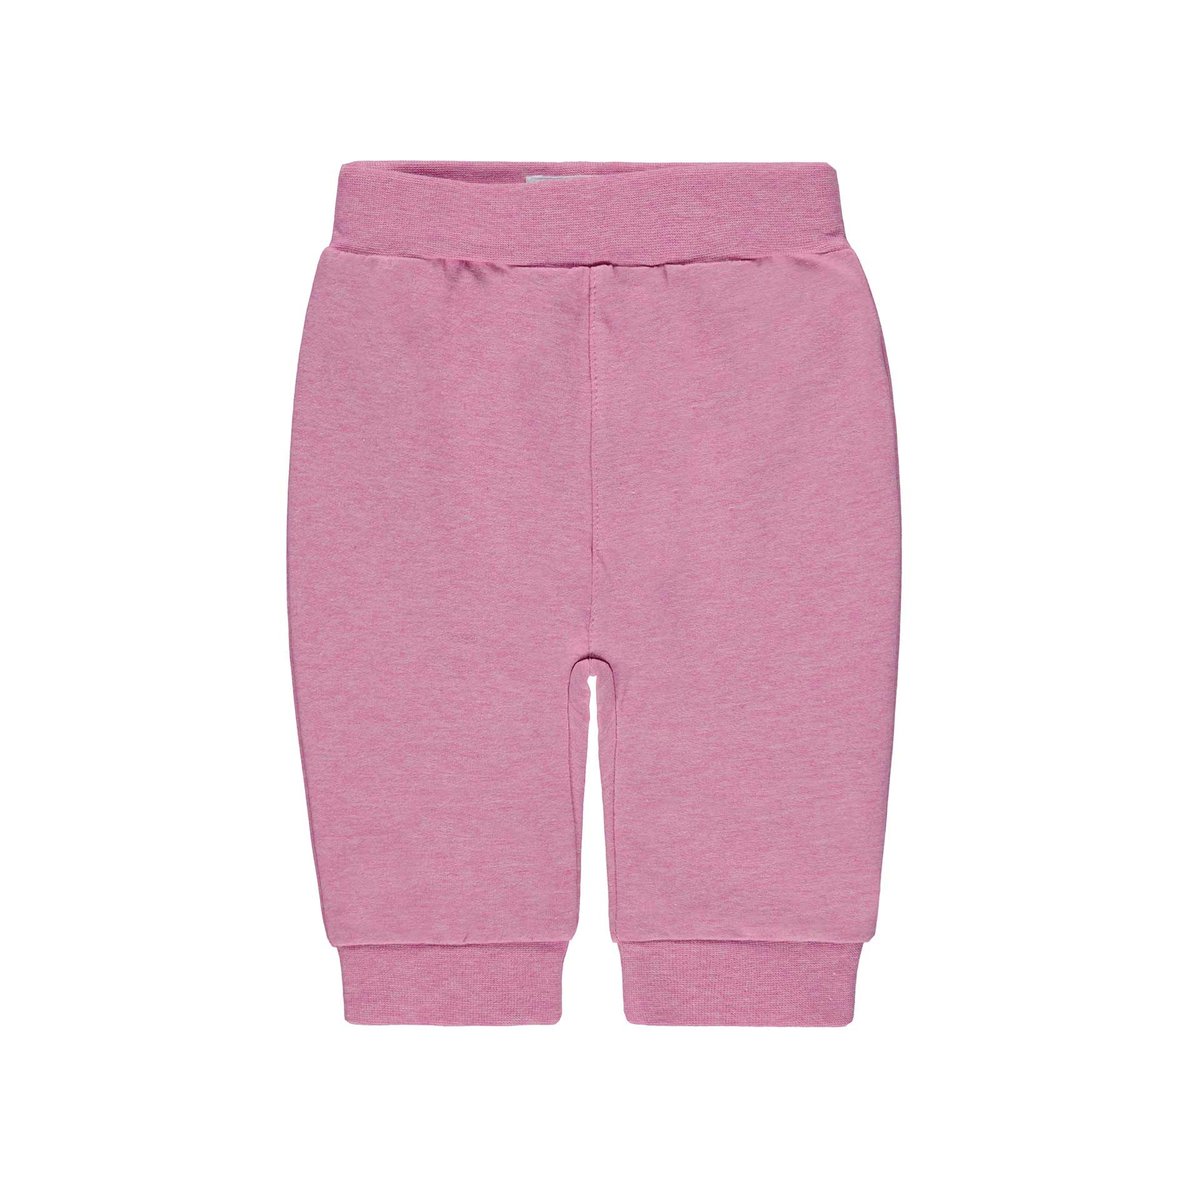 Spodnie Dresowe Dziewczęce Różowe Bellybutton Bellybutton Sklep Empik